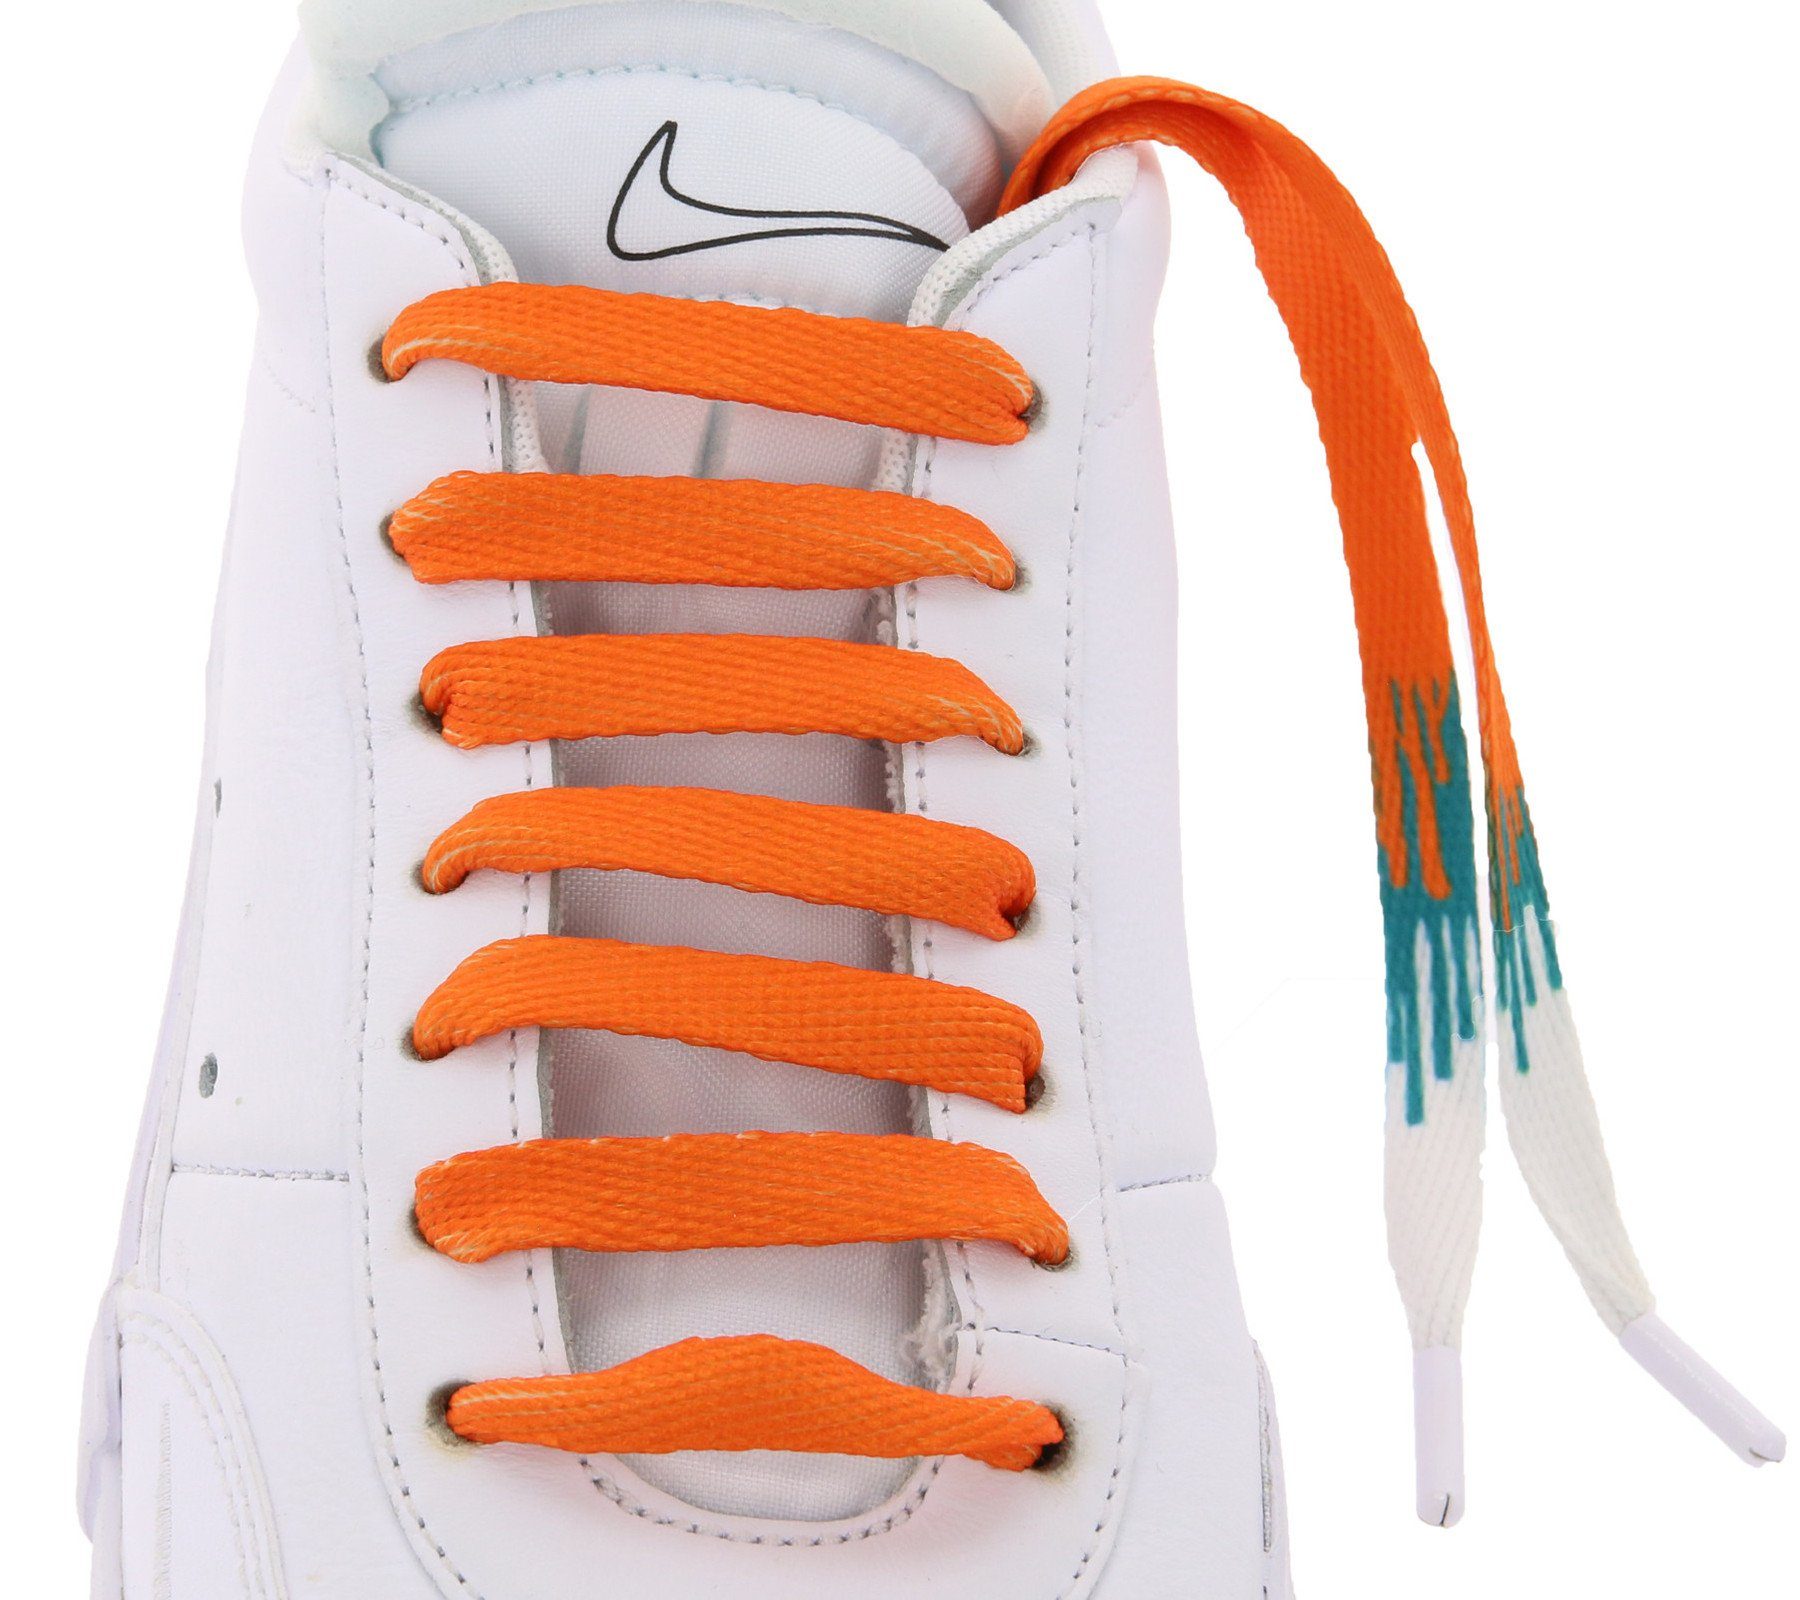 Schnürsenkel Tubelaces Schnürsenkel Orange/Weiß Schuhe TubeLaces Schuhbänder trendige Schnürbänder